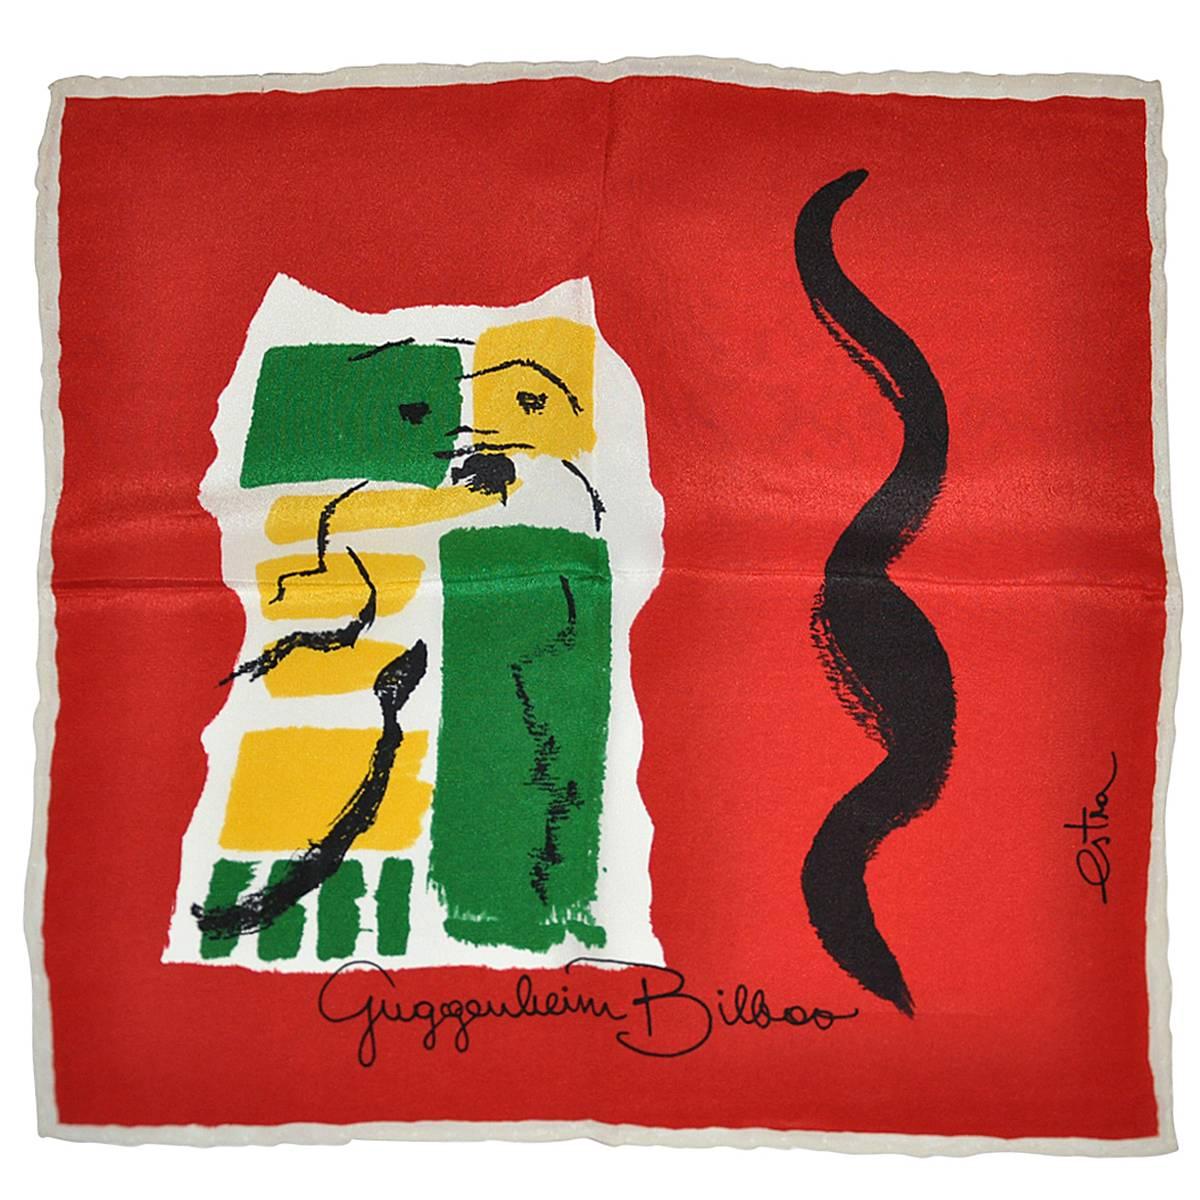 Rare Estra Bold Vividly Detailed  "Guggenheim Bilboo" Silk Handkerchief